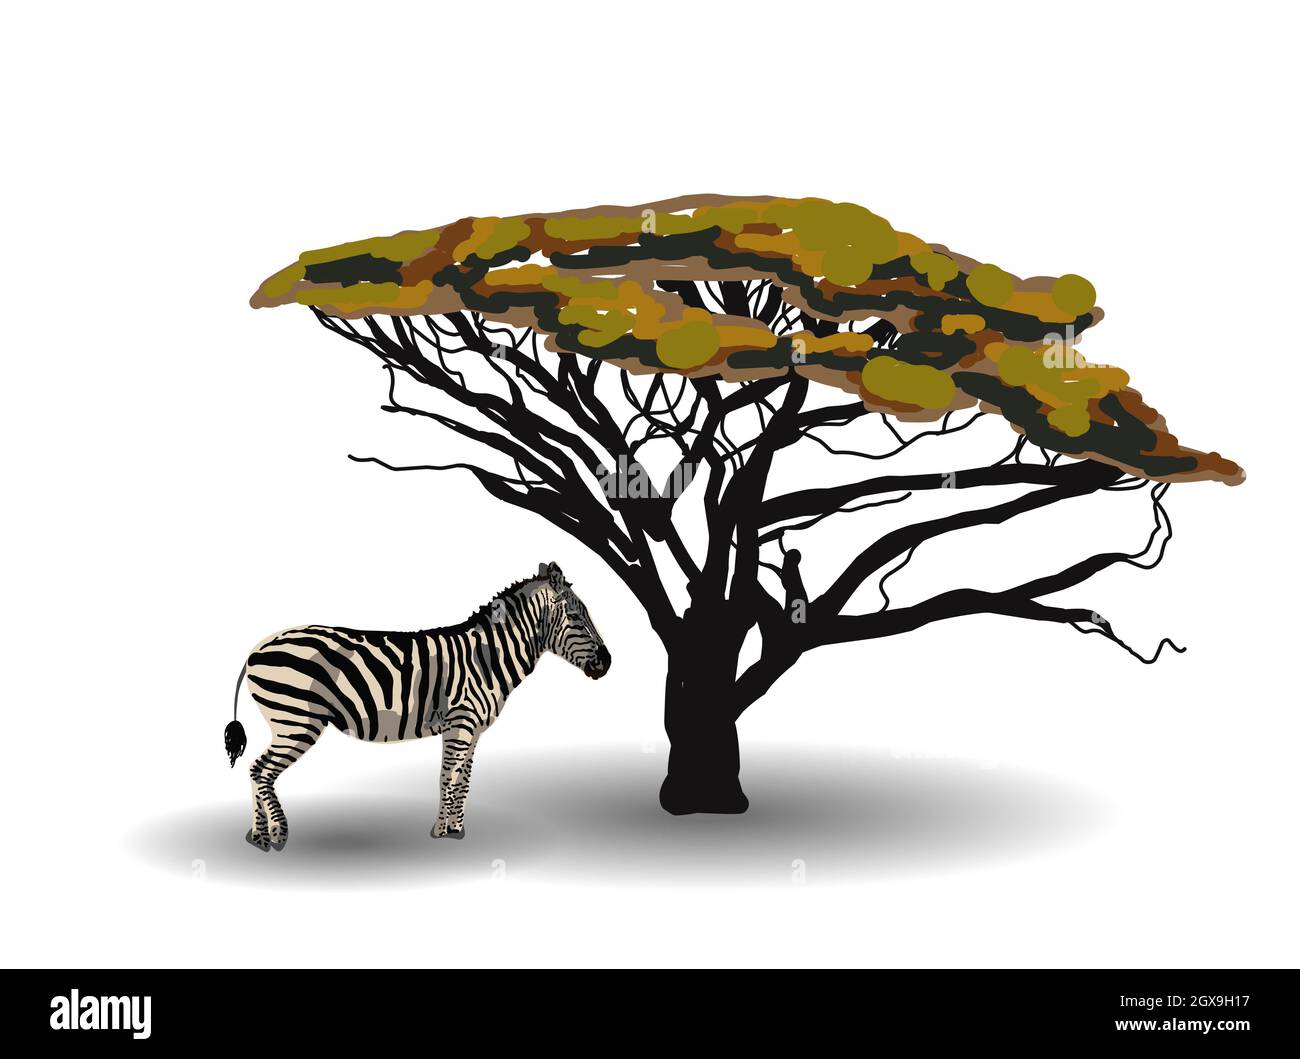 TENDENZA ETNICA. PITTURA IN STILE AFRICANO. zebra nella savana. Animale africano isolato su sfondo bianco. Illustrazione vettoriale. Foto Stock